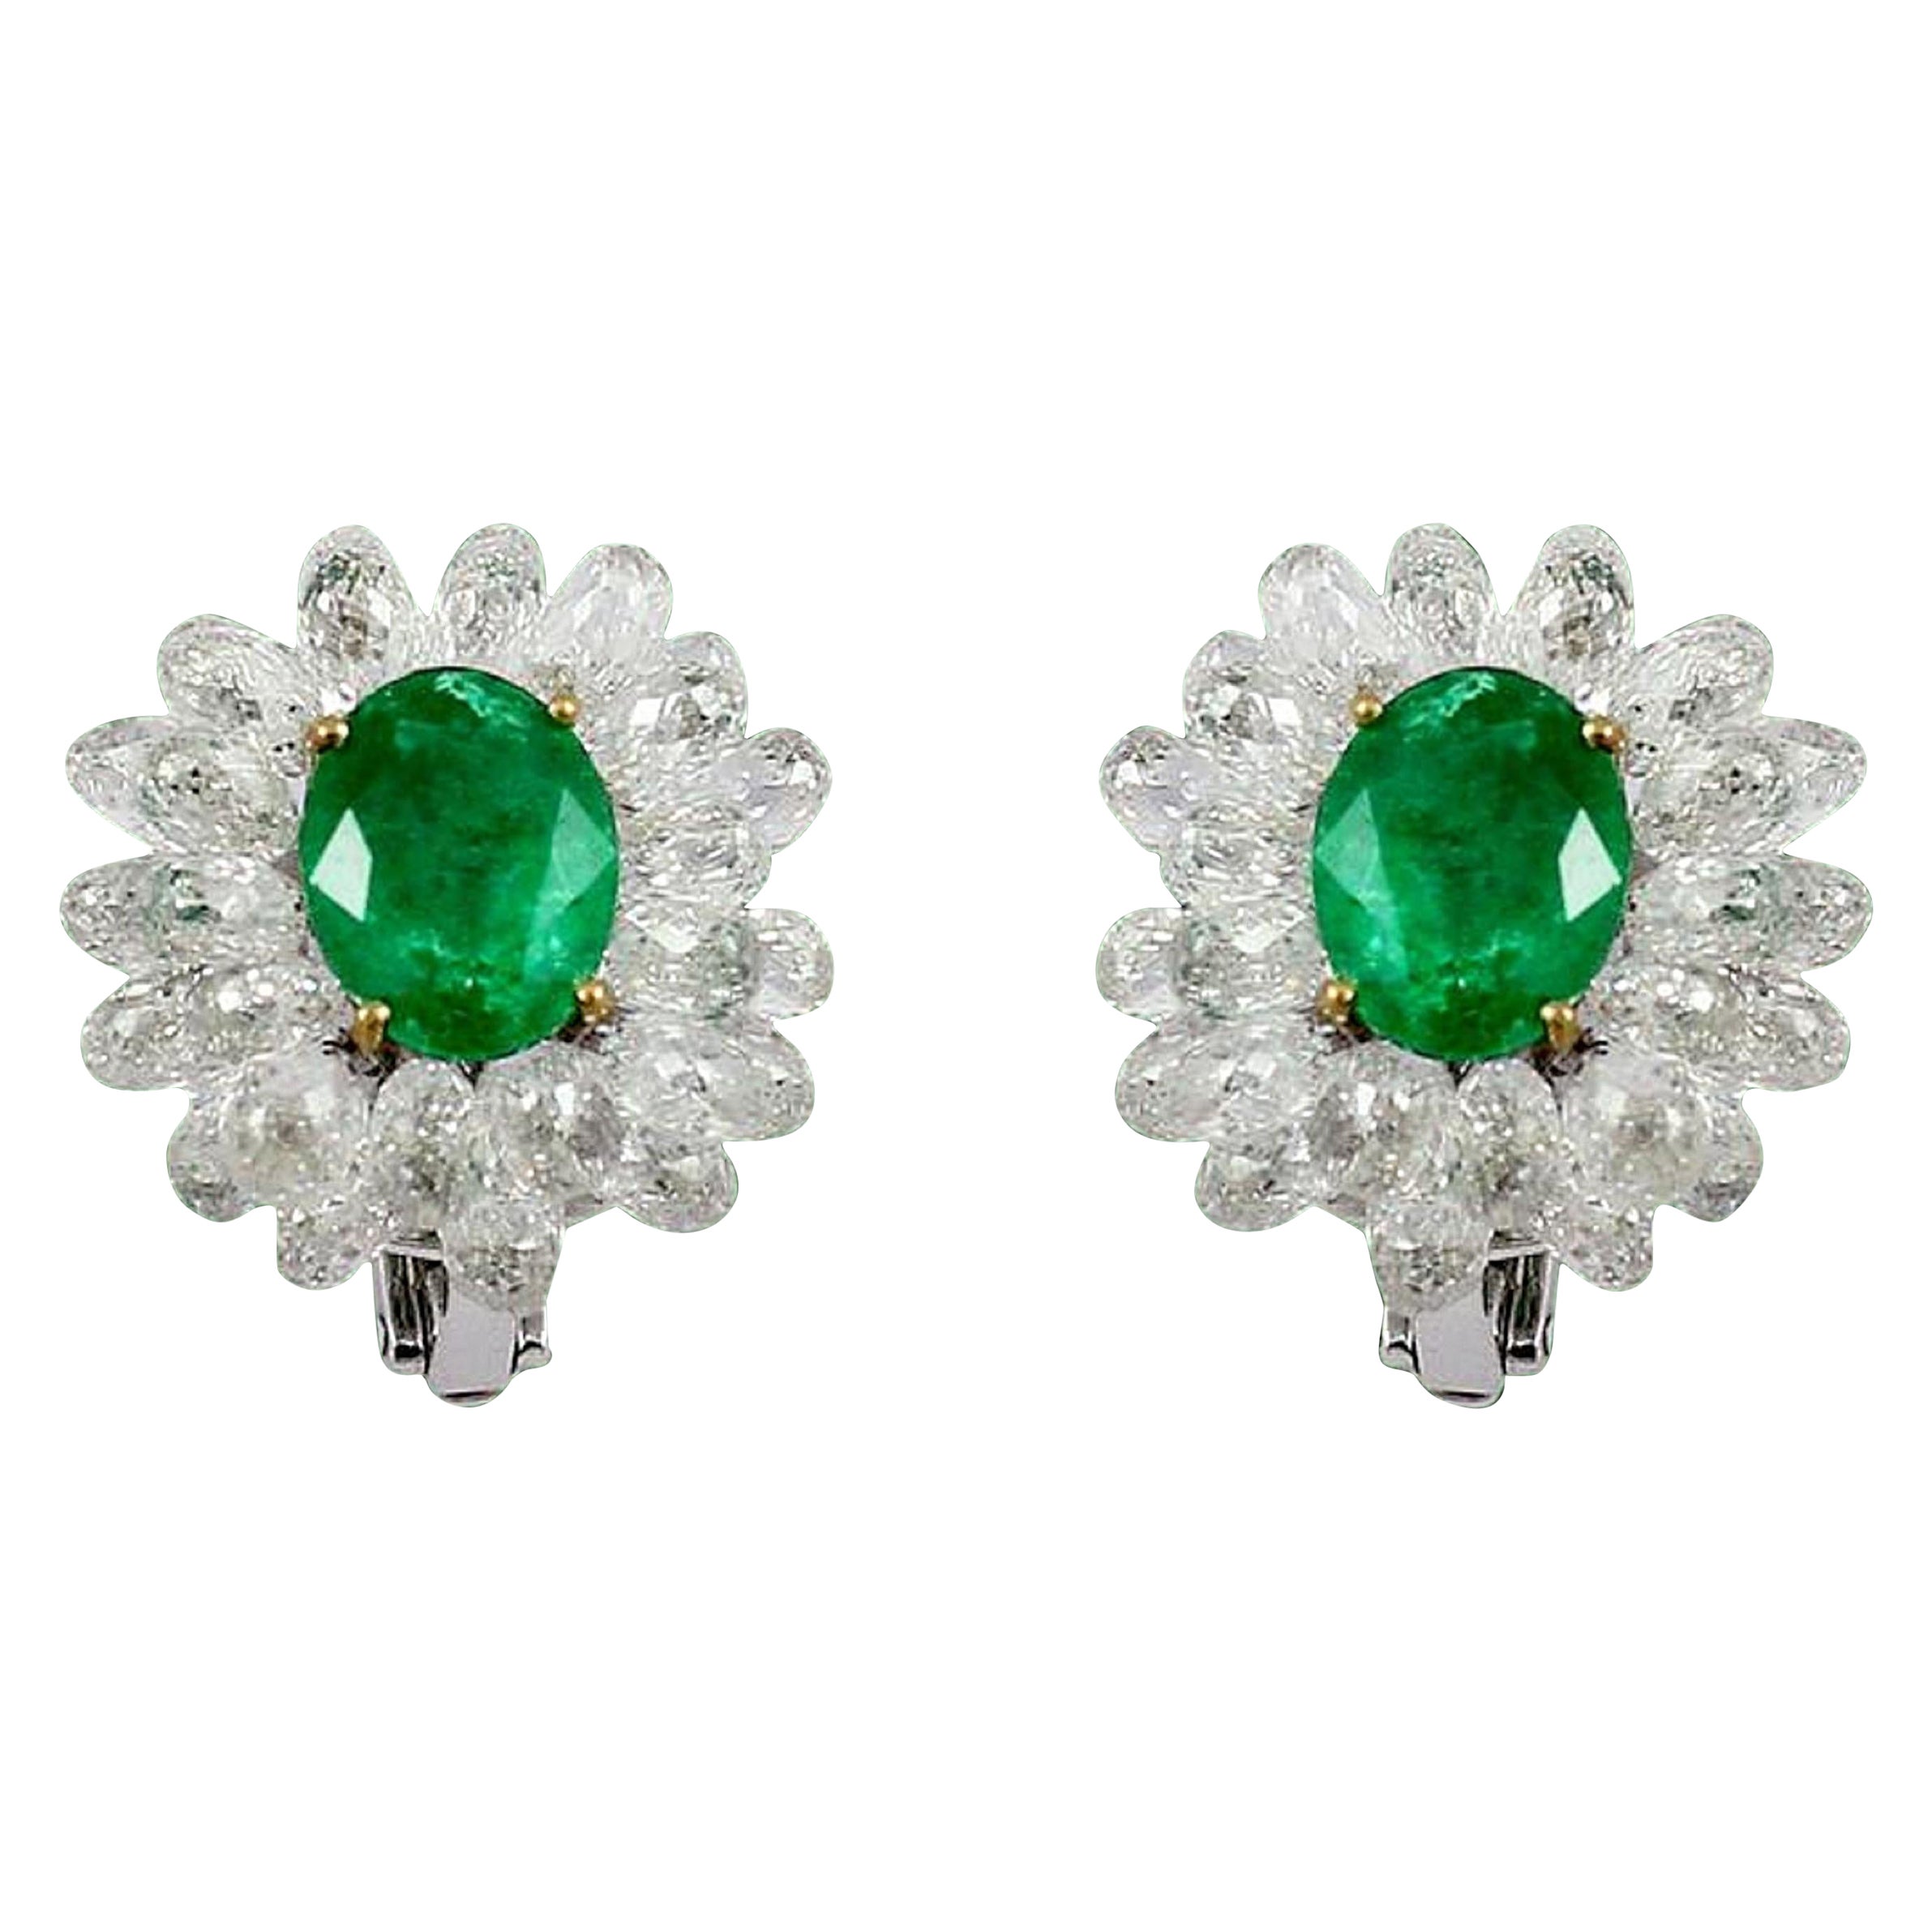 PANIM Diamond Briolette and Emerald 14k White Gold Cluster Earrings